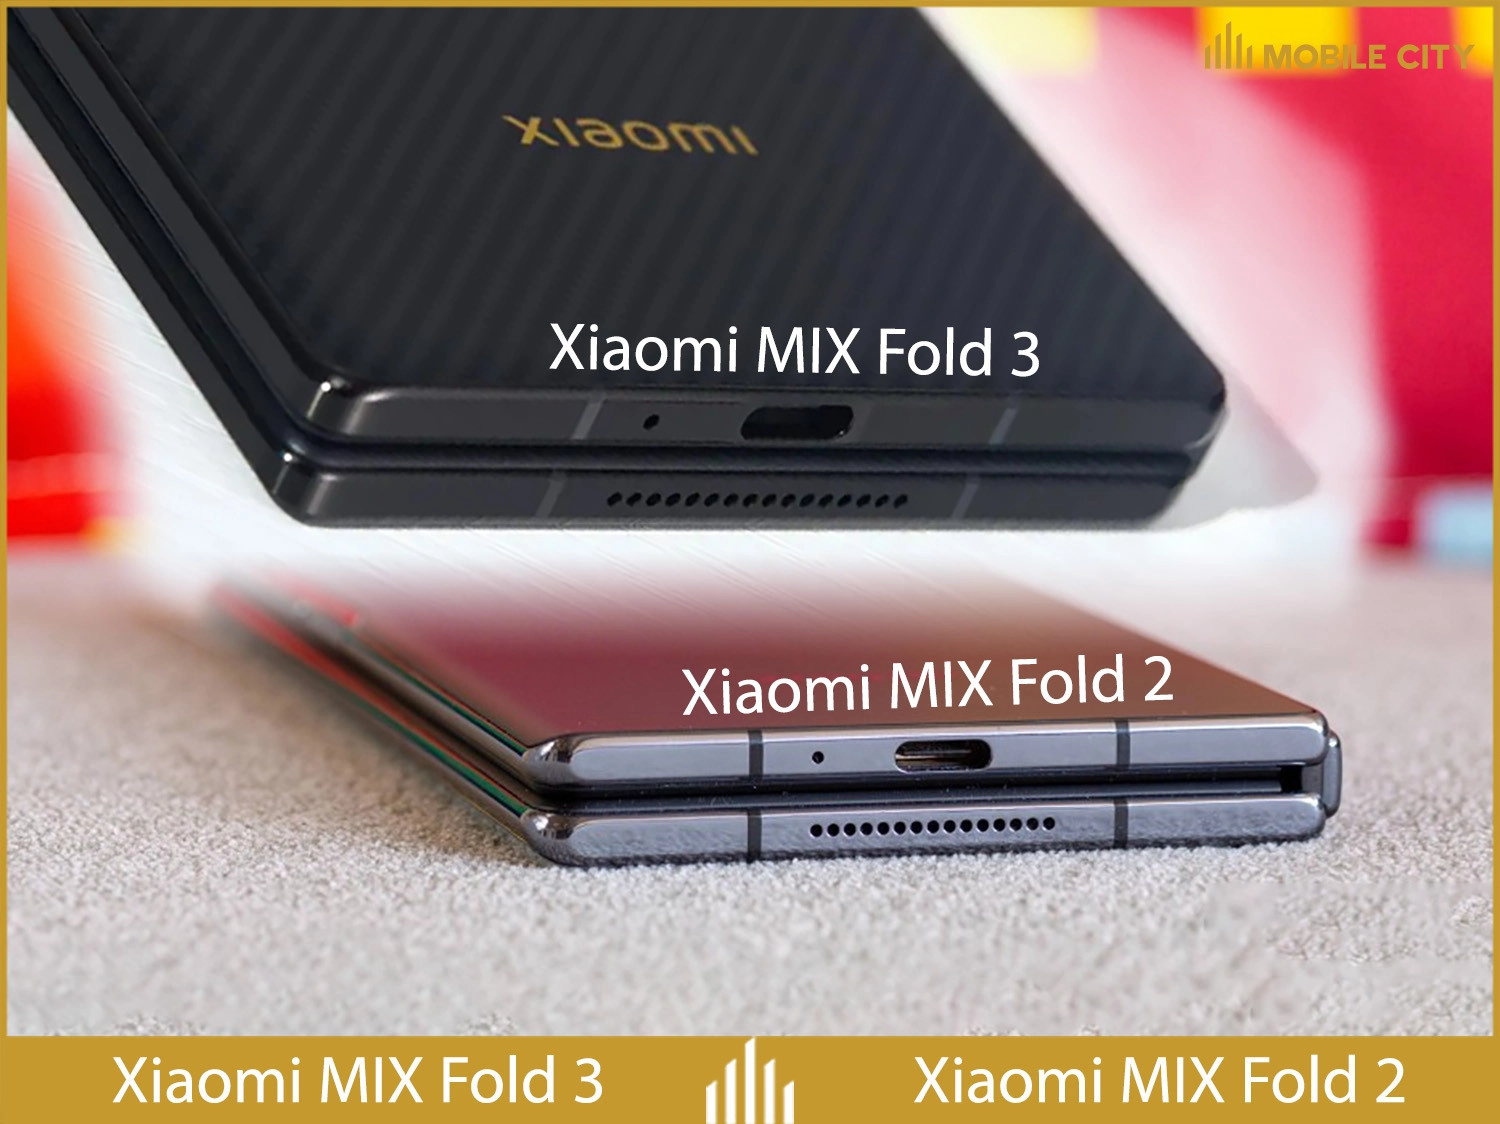 xiaomi-mix-fold-3-so-sanh-sac